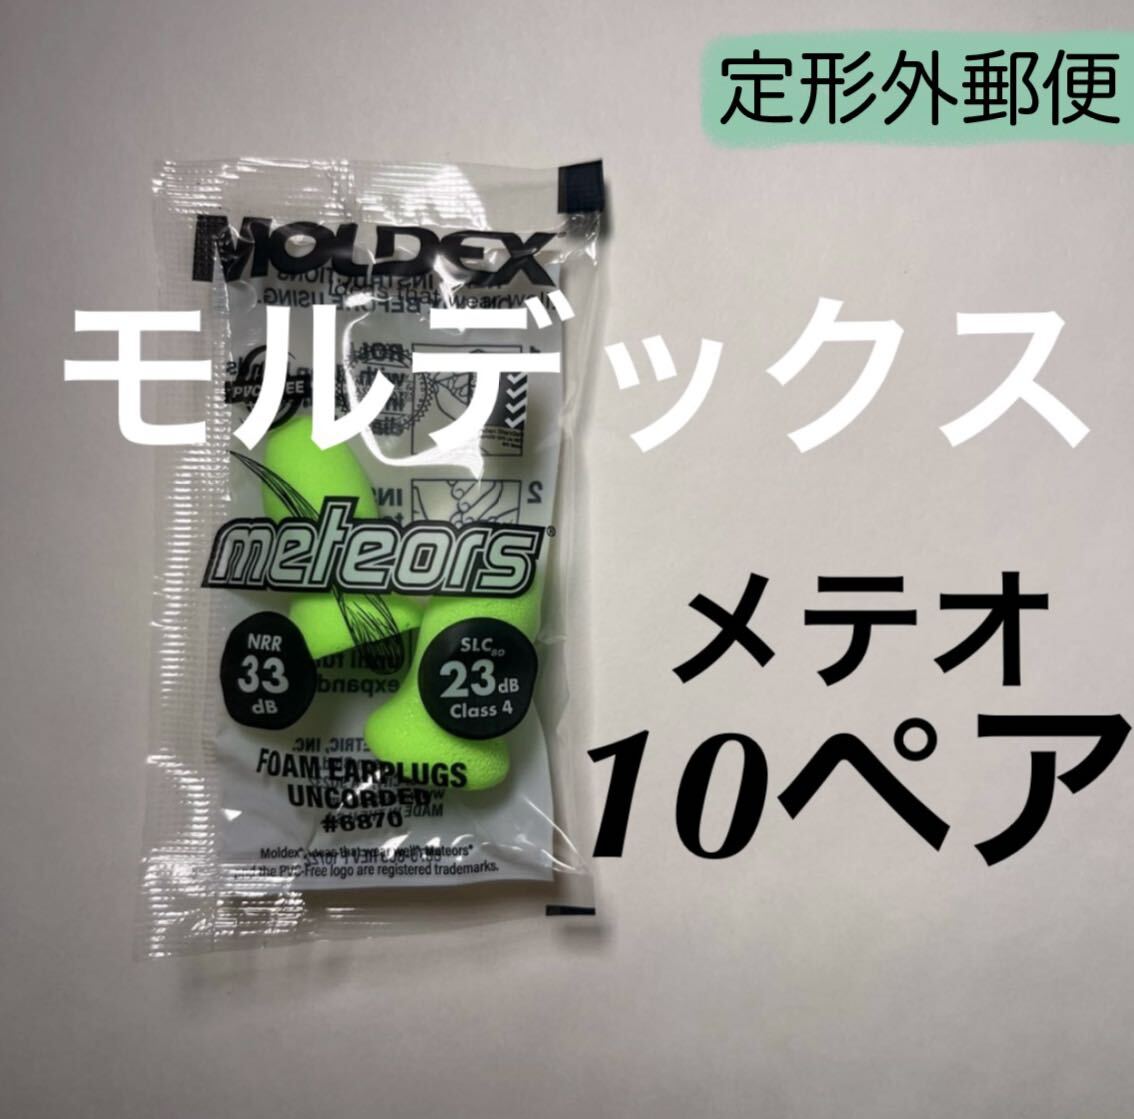 正規品 モルデックス メテオ 10ペア 耳栓 MOLDEX 定形外郵便発送_画像1